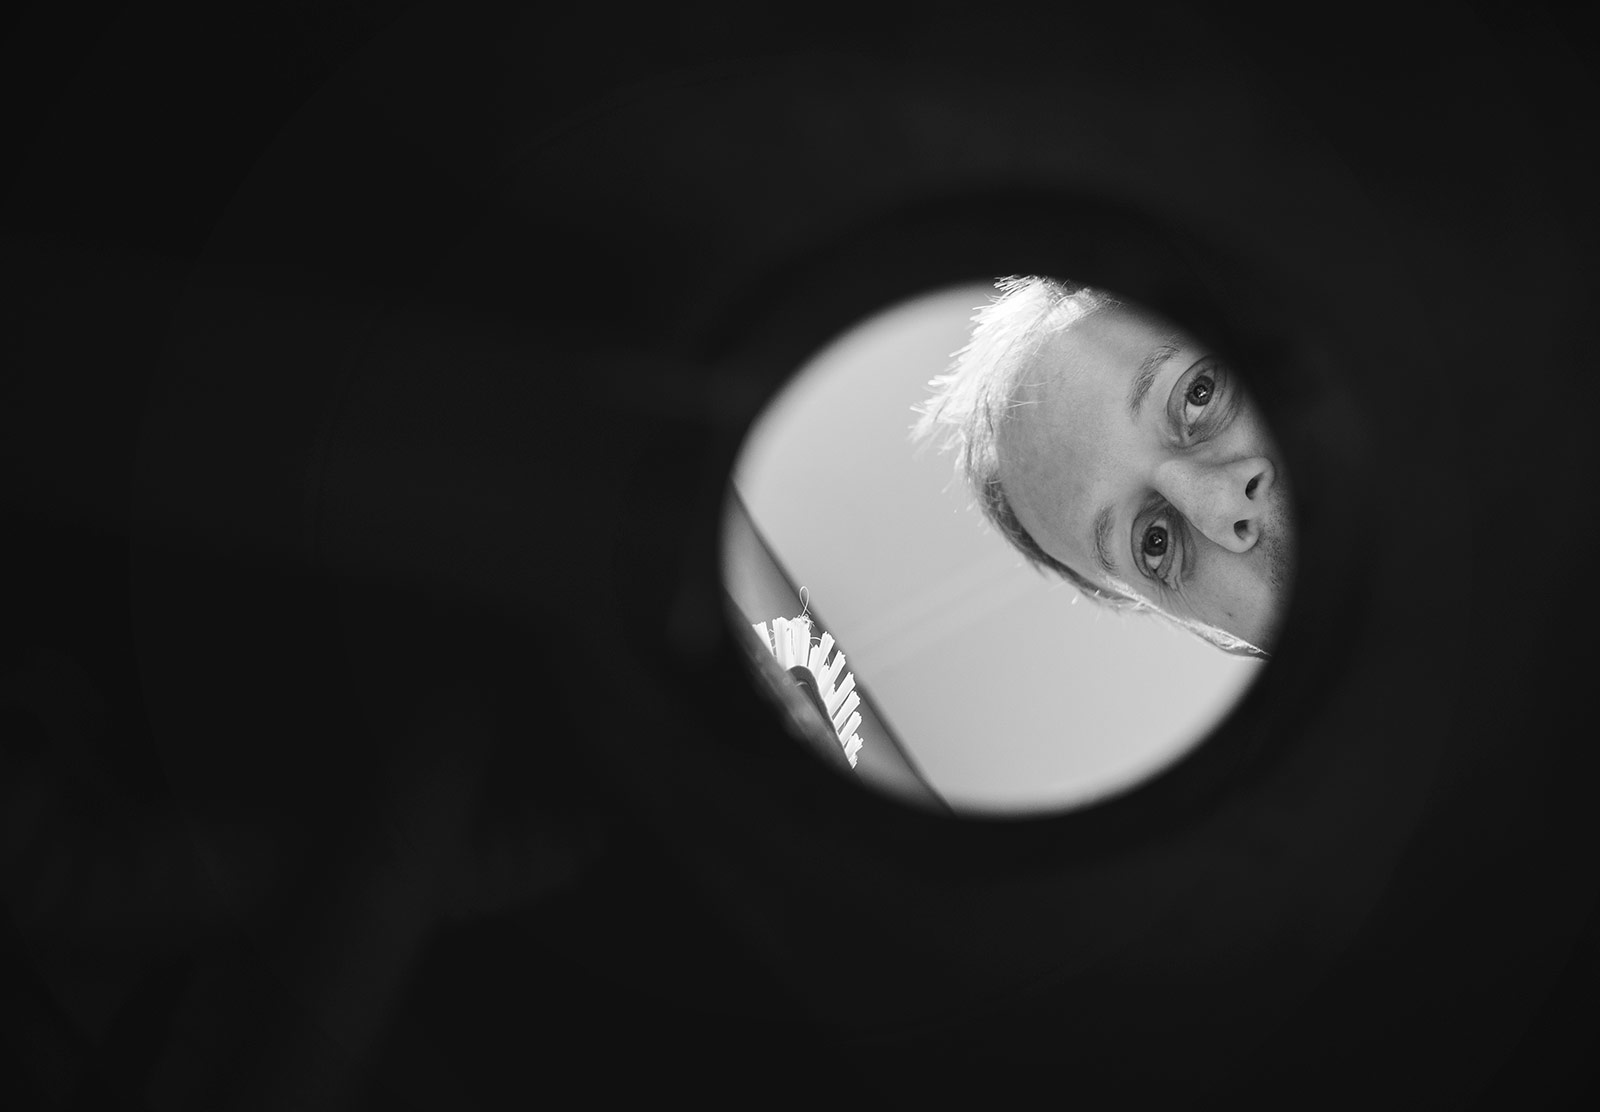 Man peering through sink hole